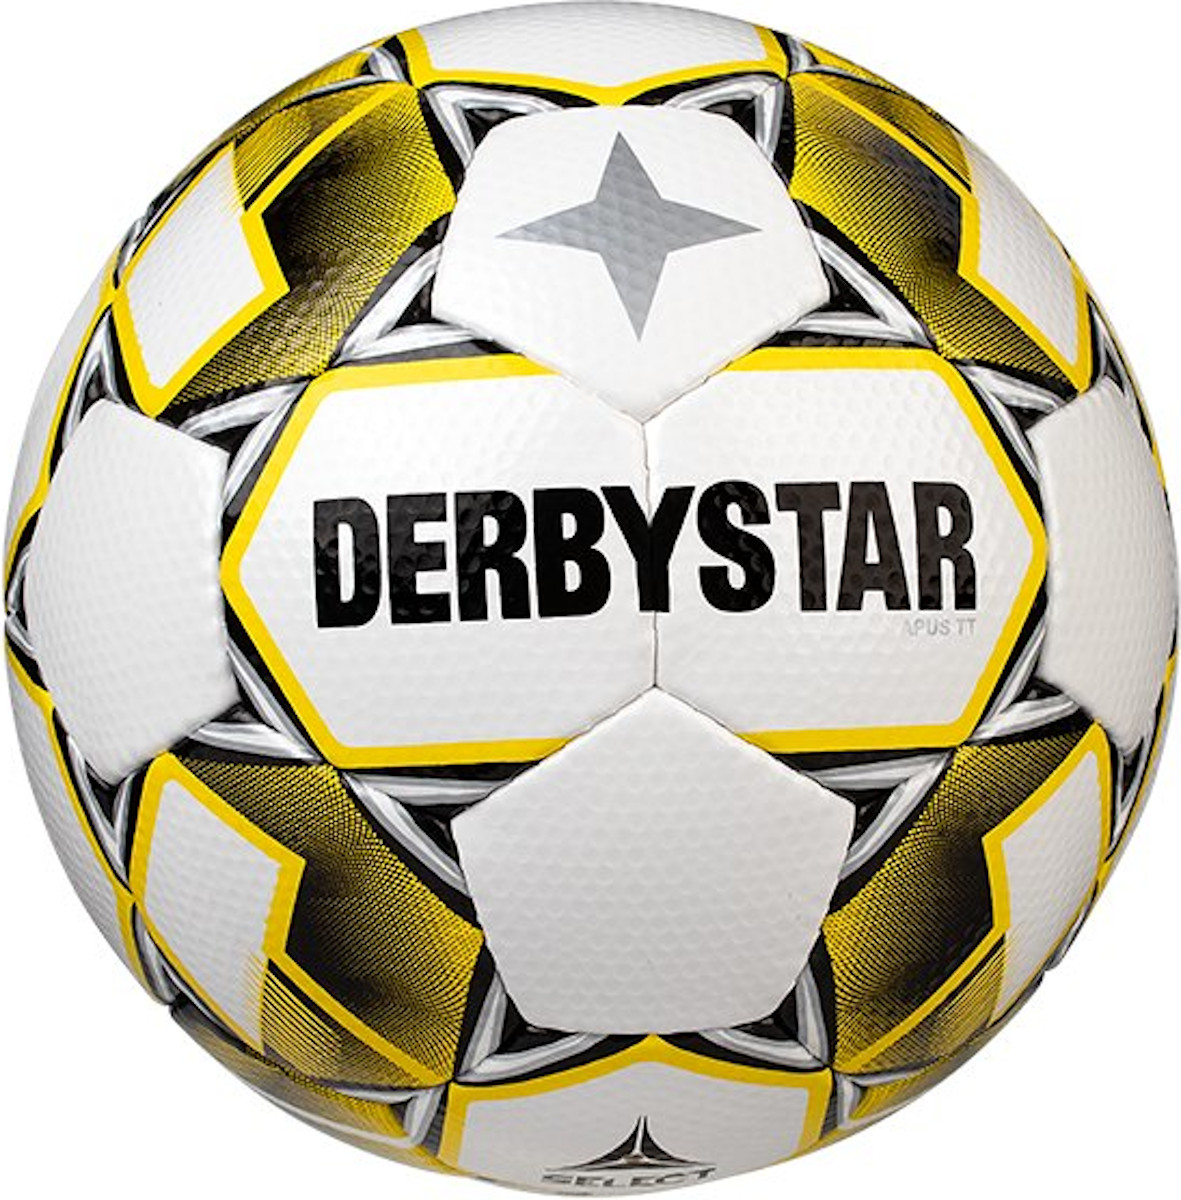 Μπάλα Derbystar Apus TT v20 Training Ball